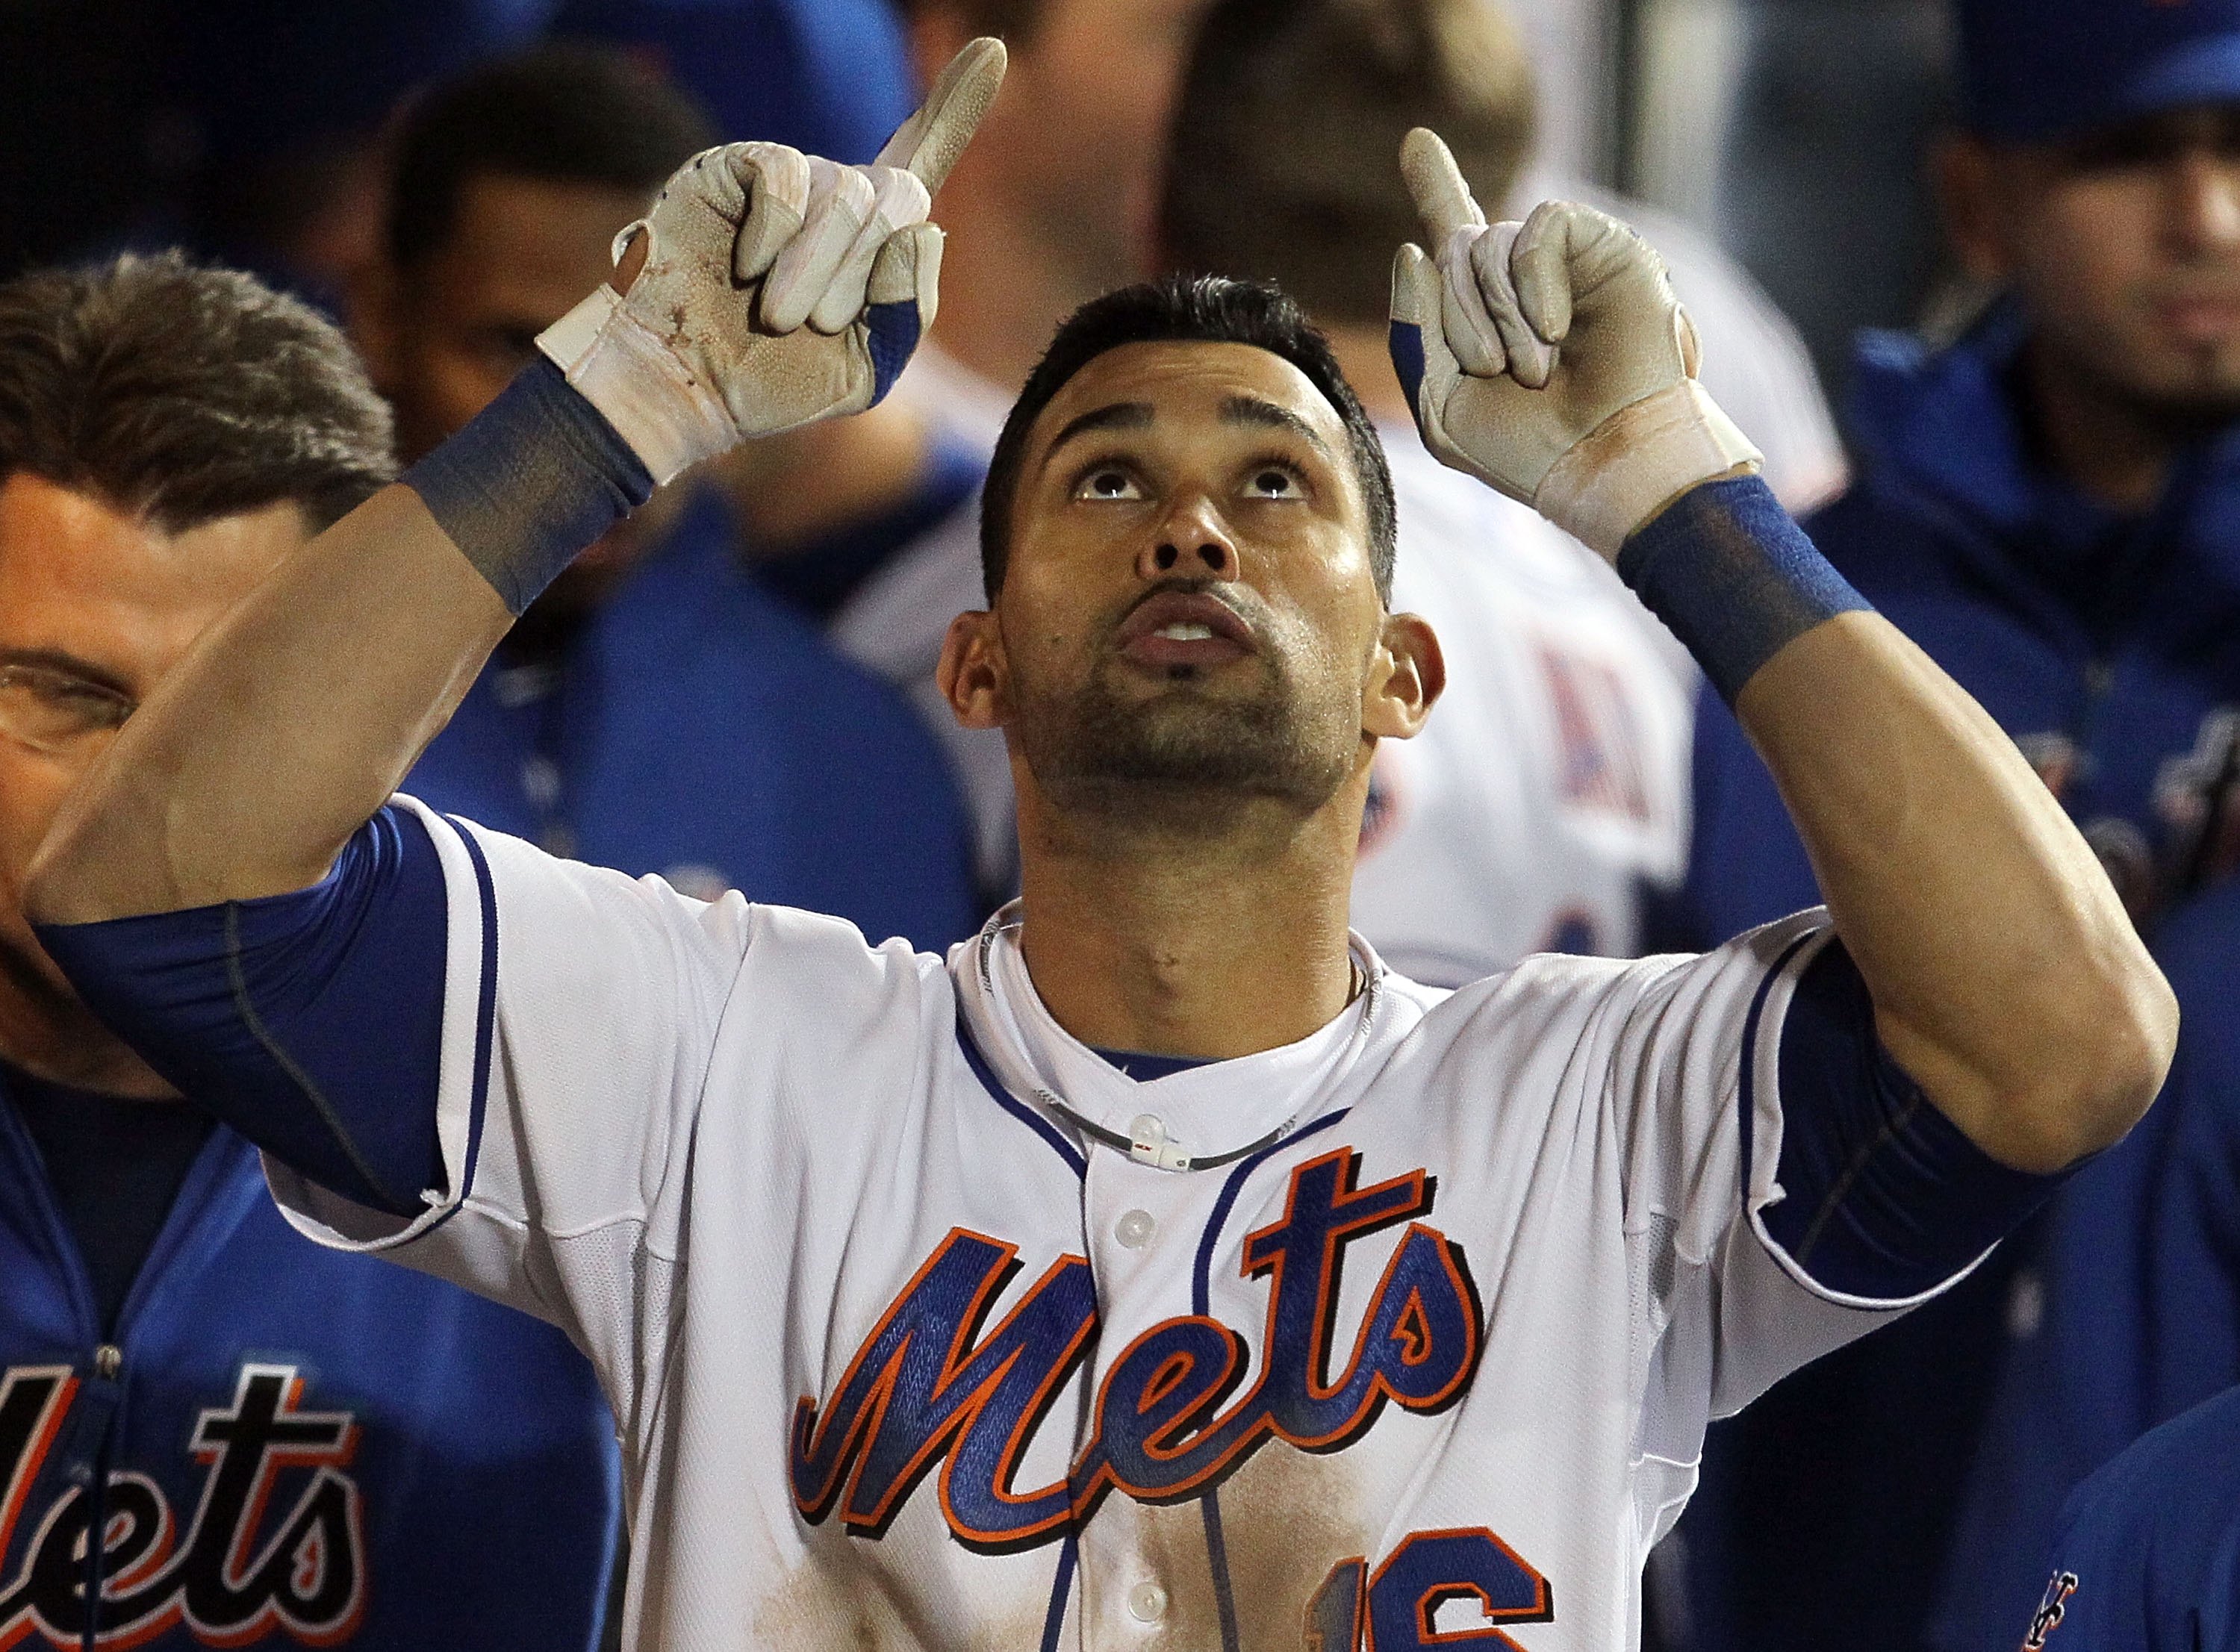 Carlos Delgado, New York Mets Wiki